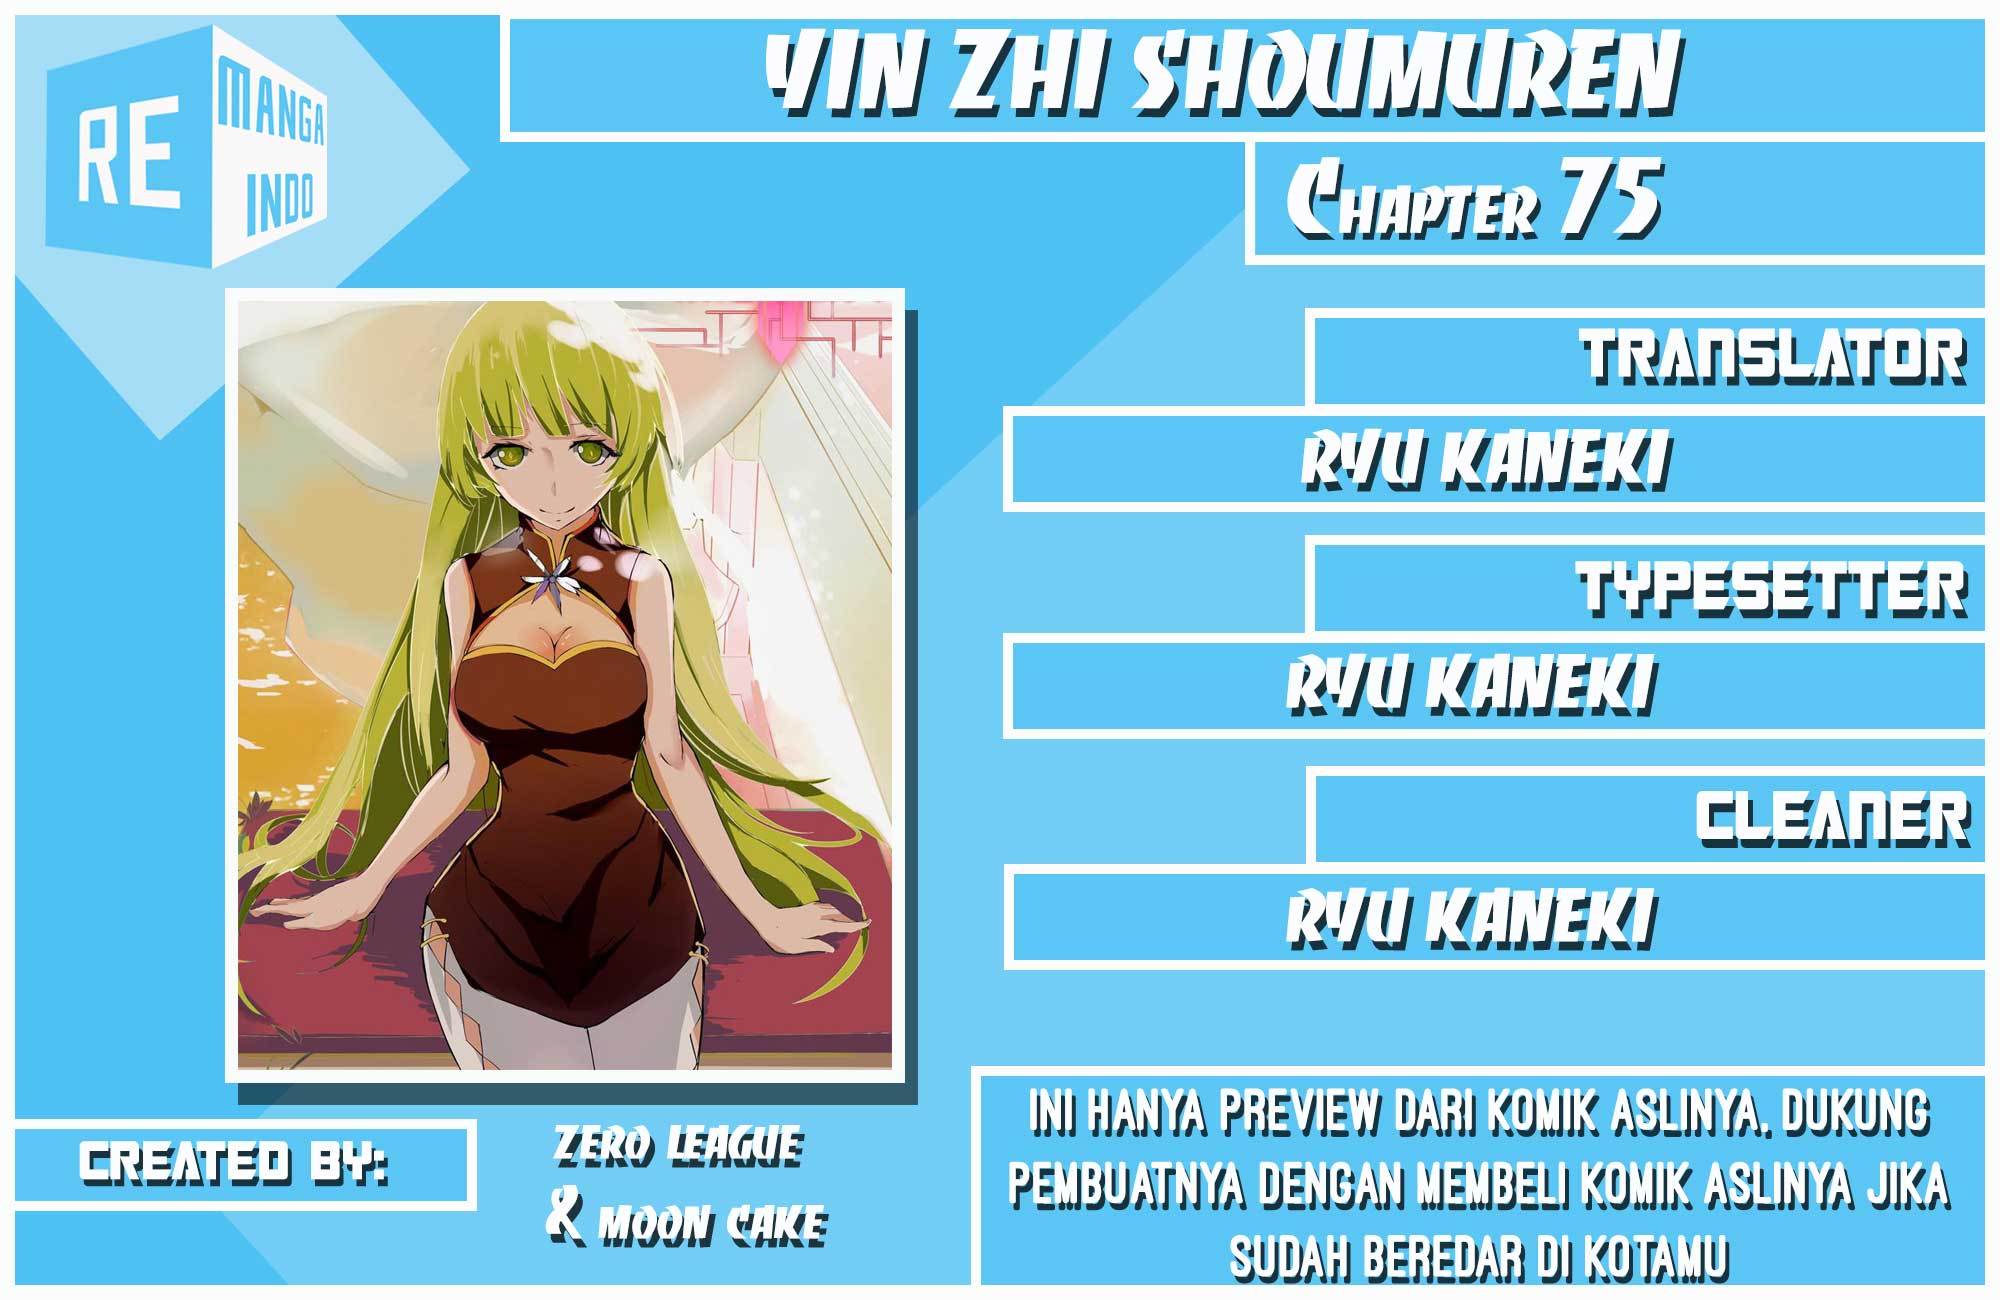 Yin Zhi Shoumuren Chapter 75